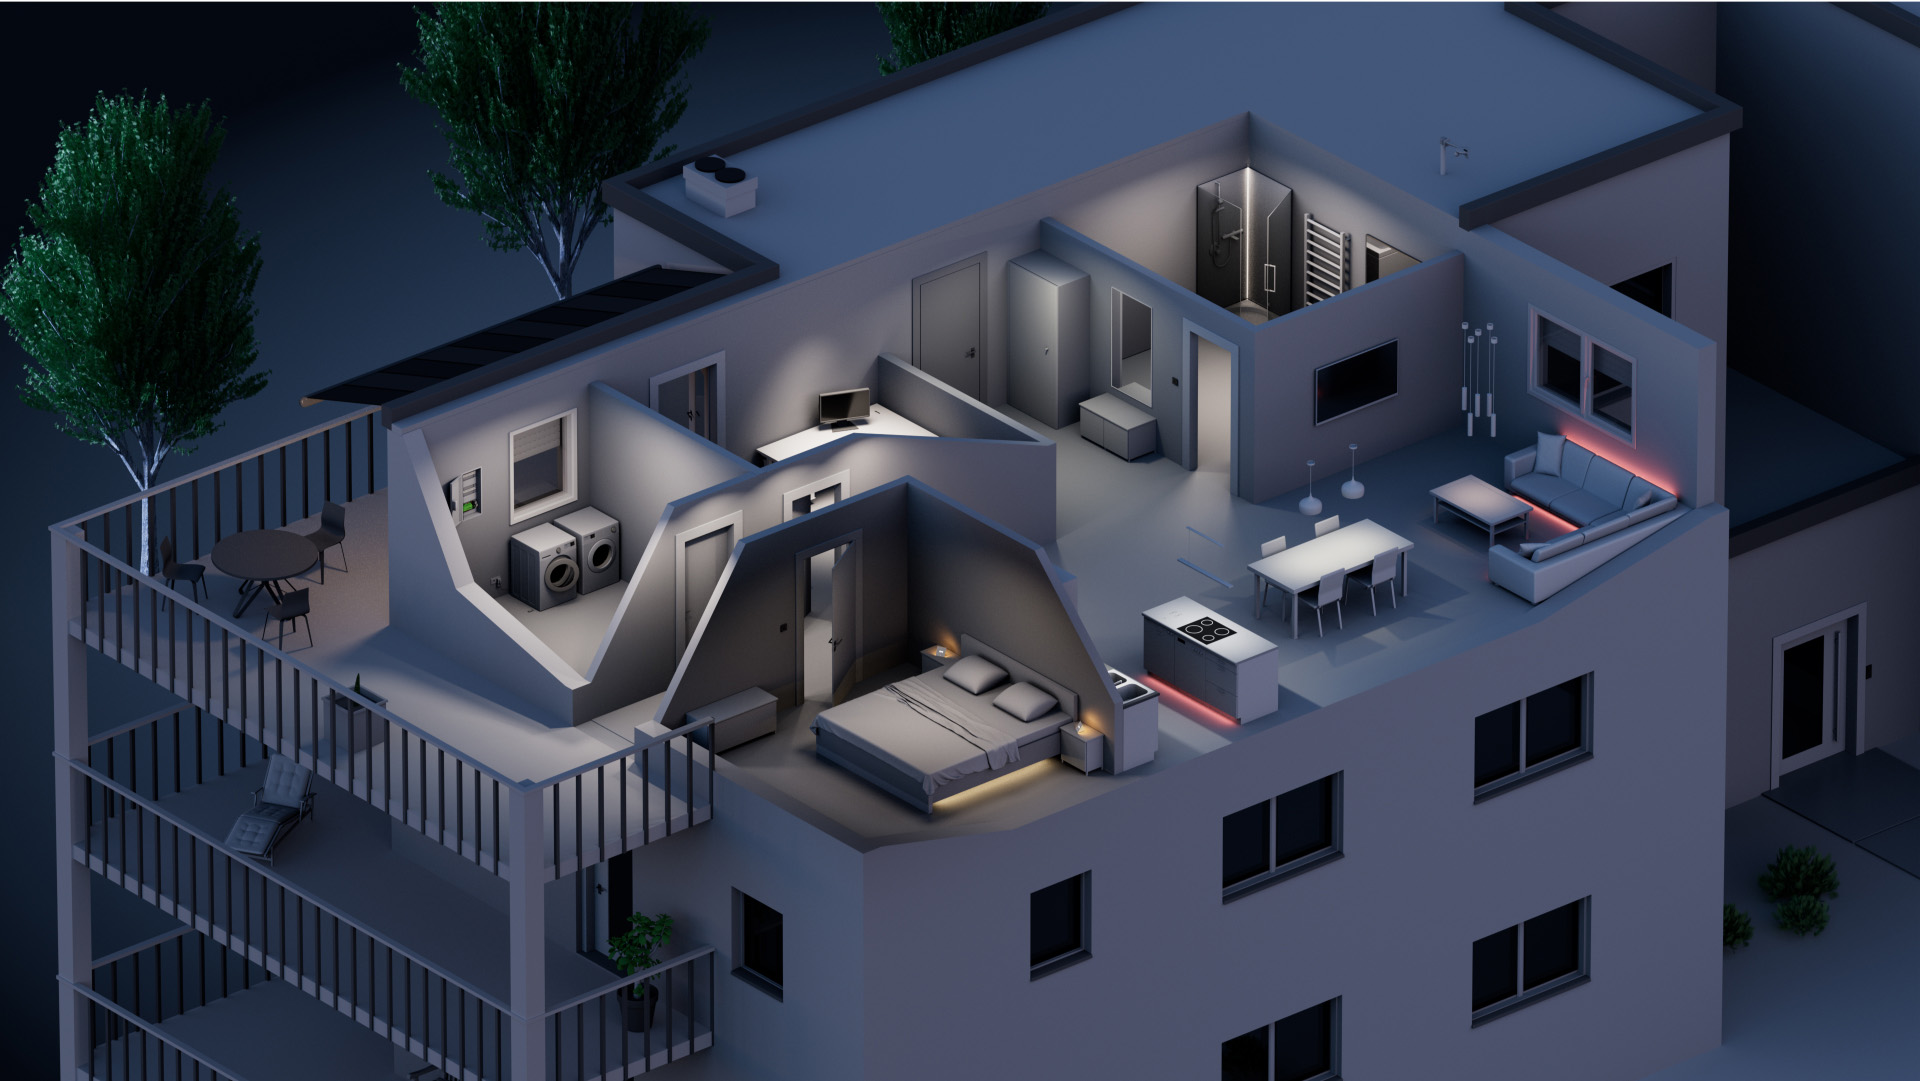 Ein Bild von einer Wohnung, auf dem bespielhaft die Verwendung von Gebäudeautomation visualisiert wurde.